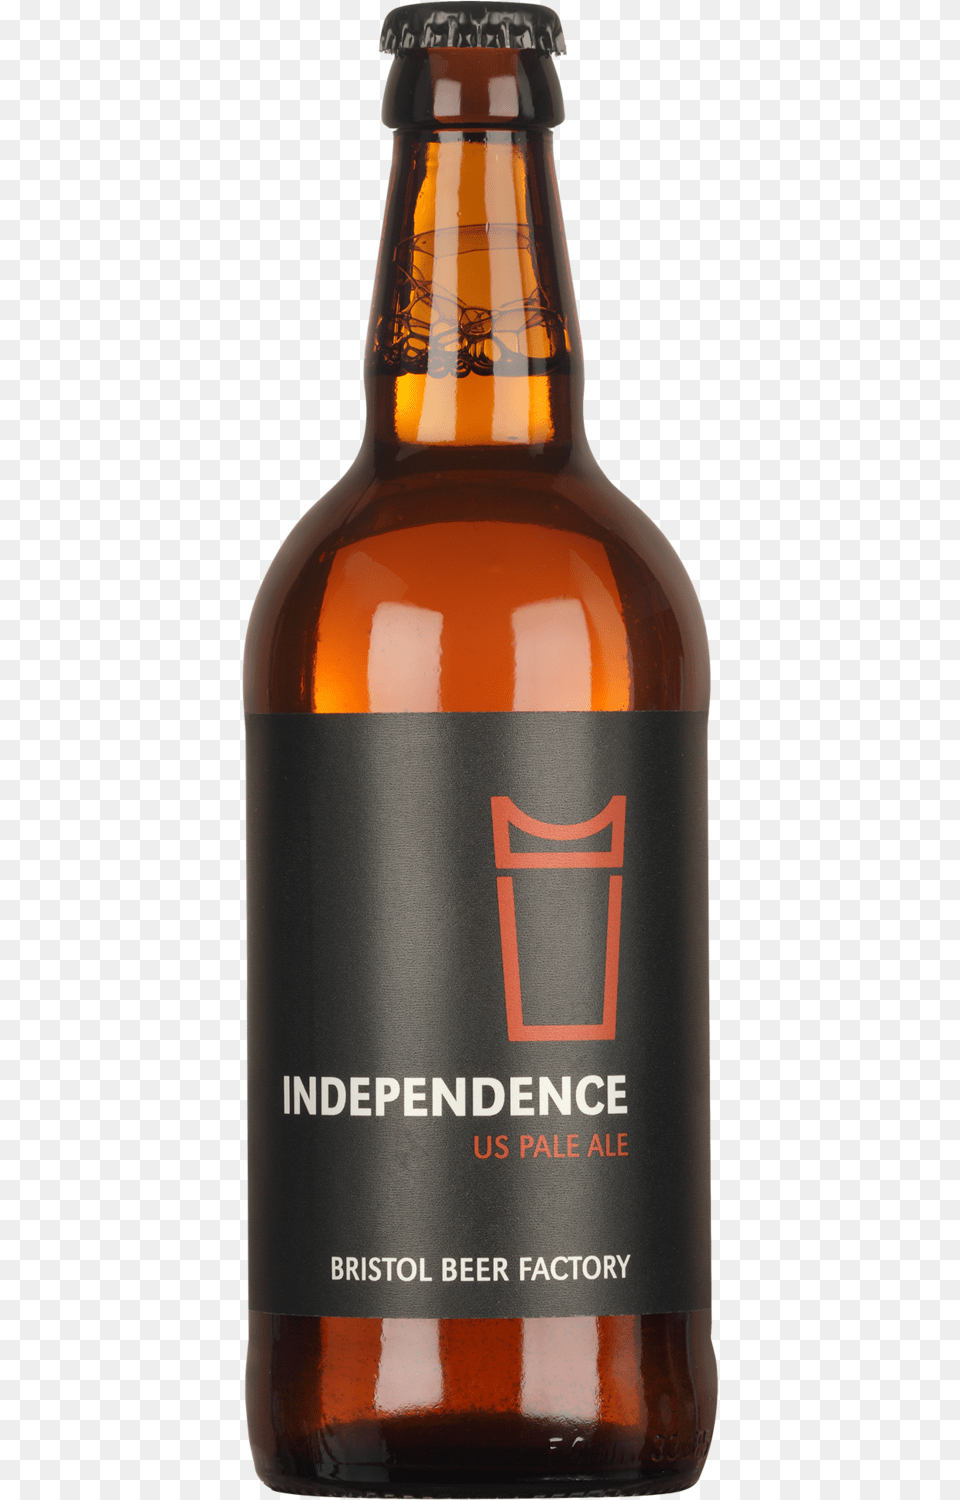 Bbf Independence, Alcohol, Beer, Beer Bottle, Beverage Free Transparent Png